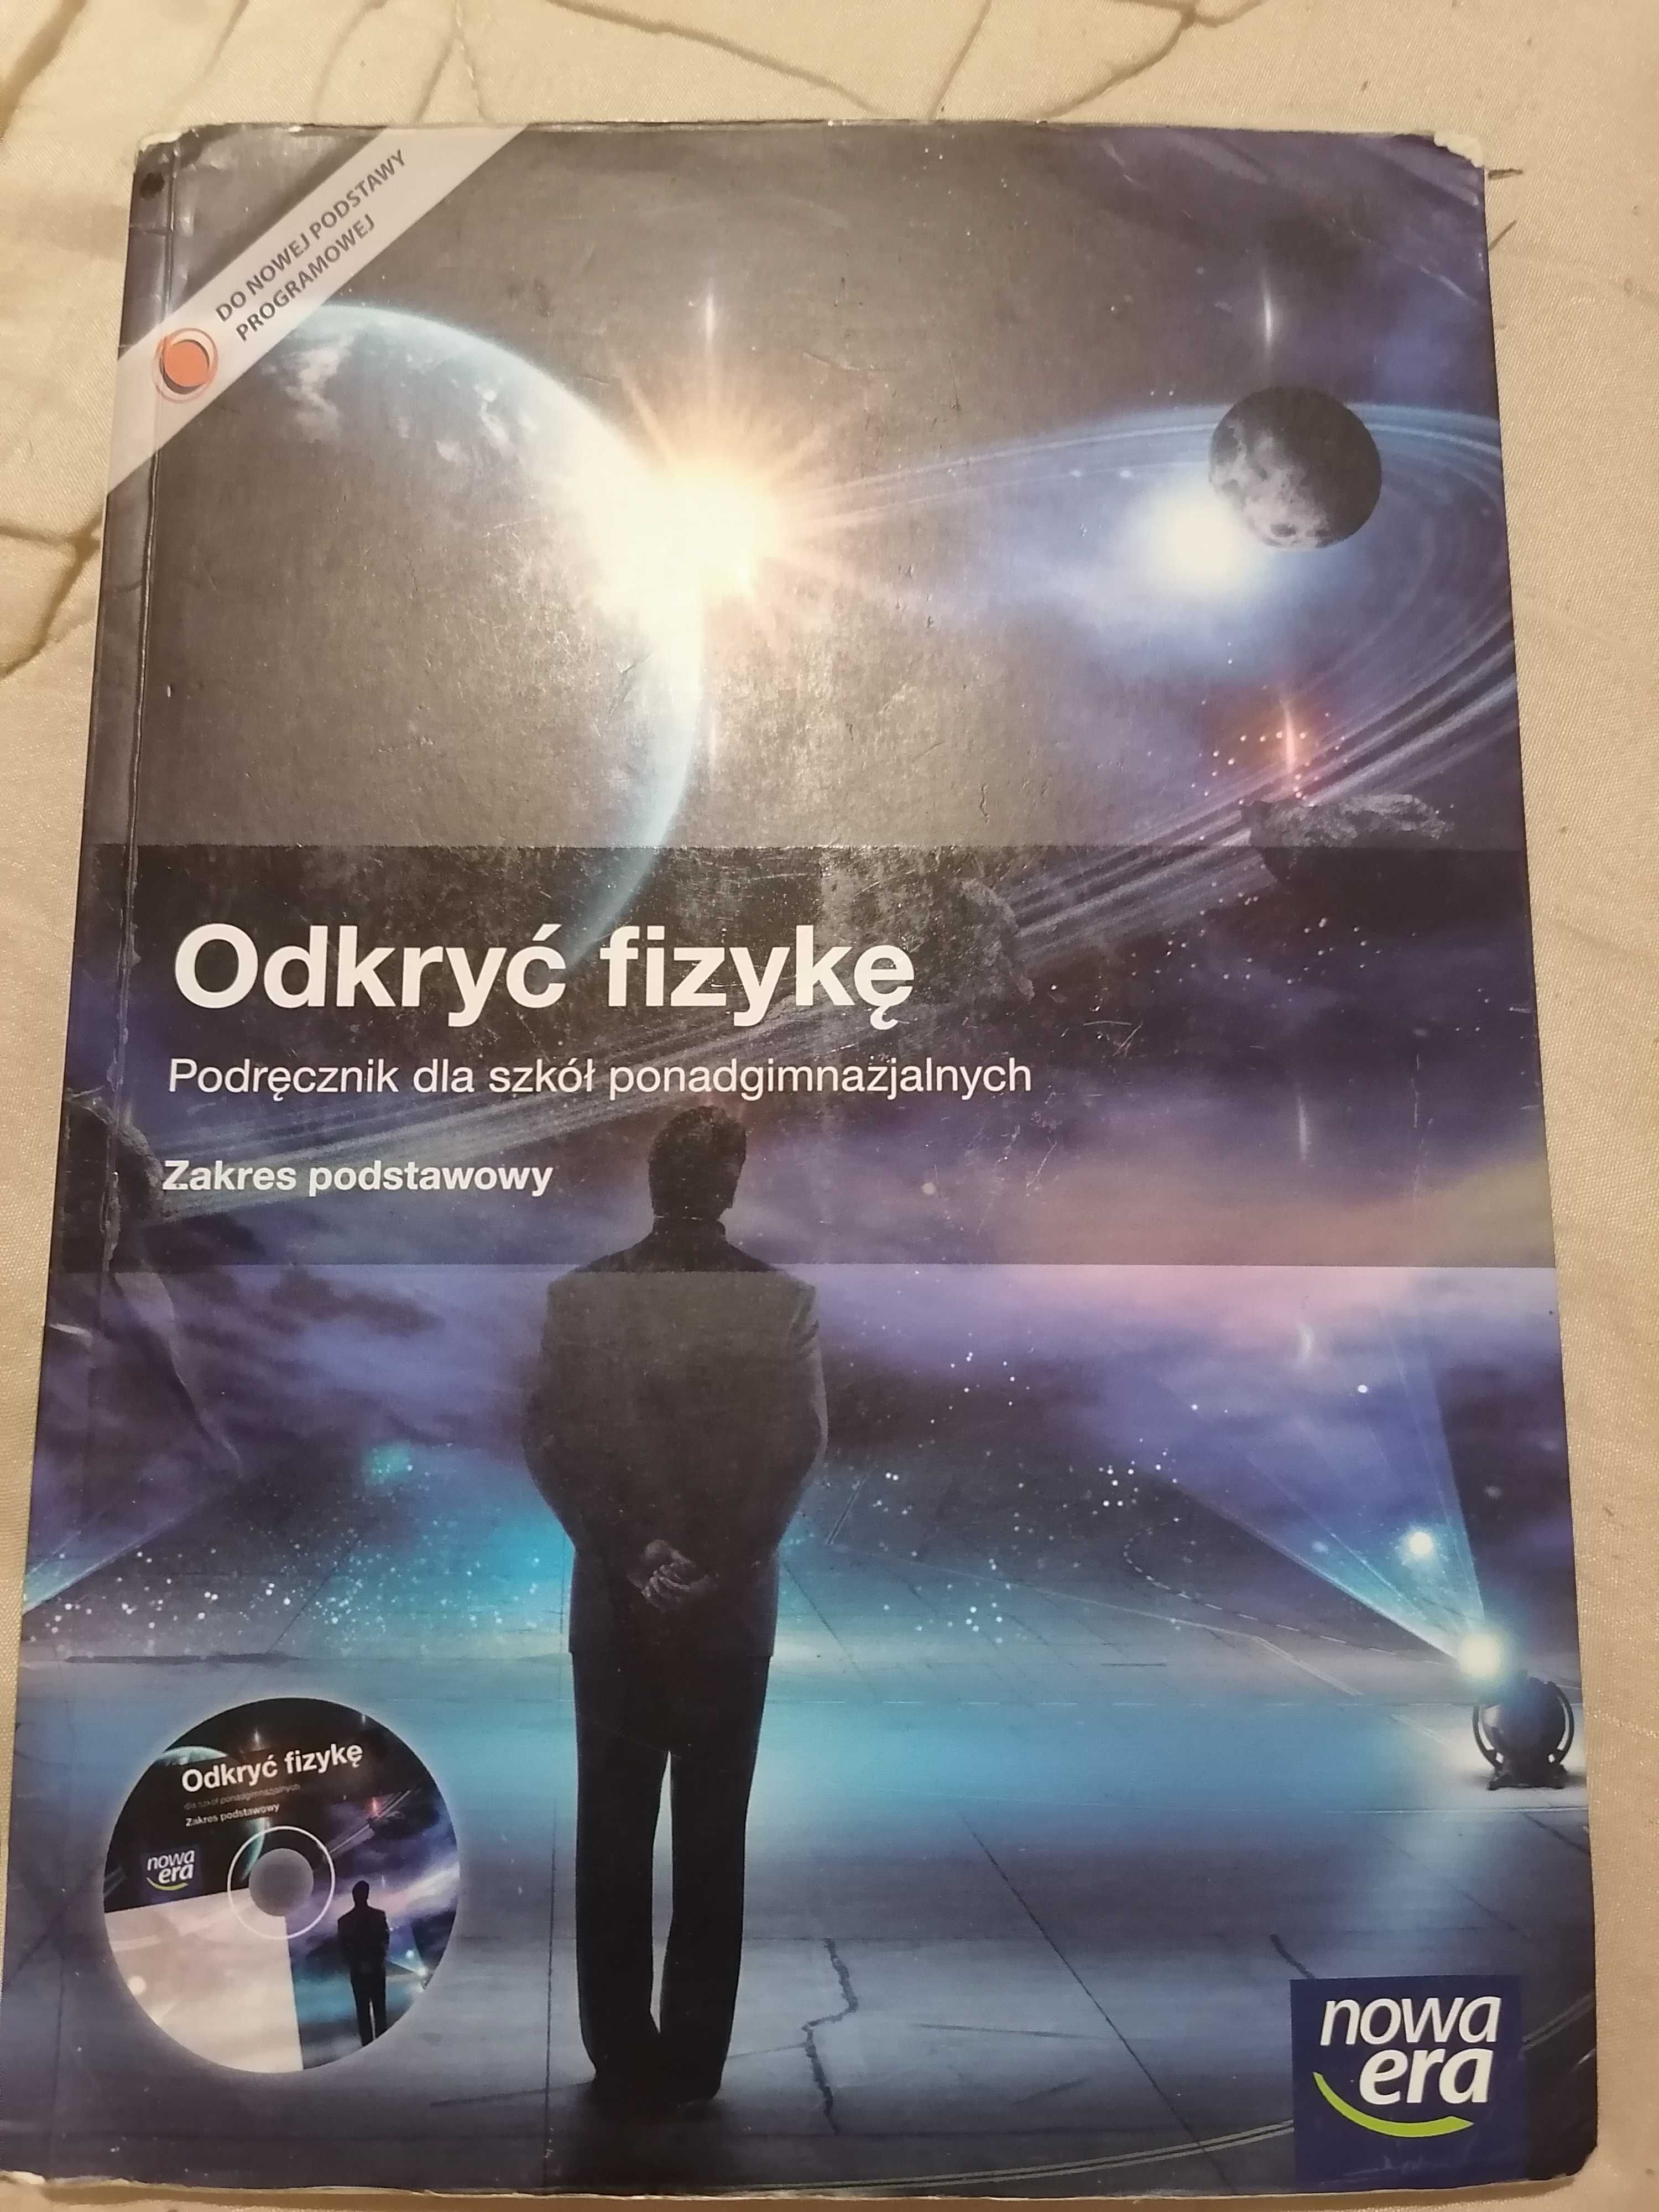 Podręcznik "Odkryć fizykę"